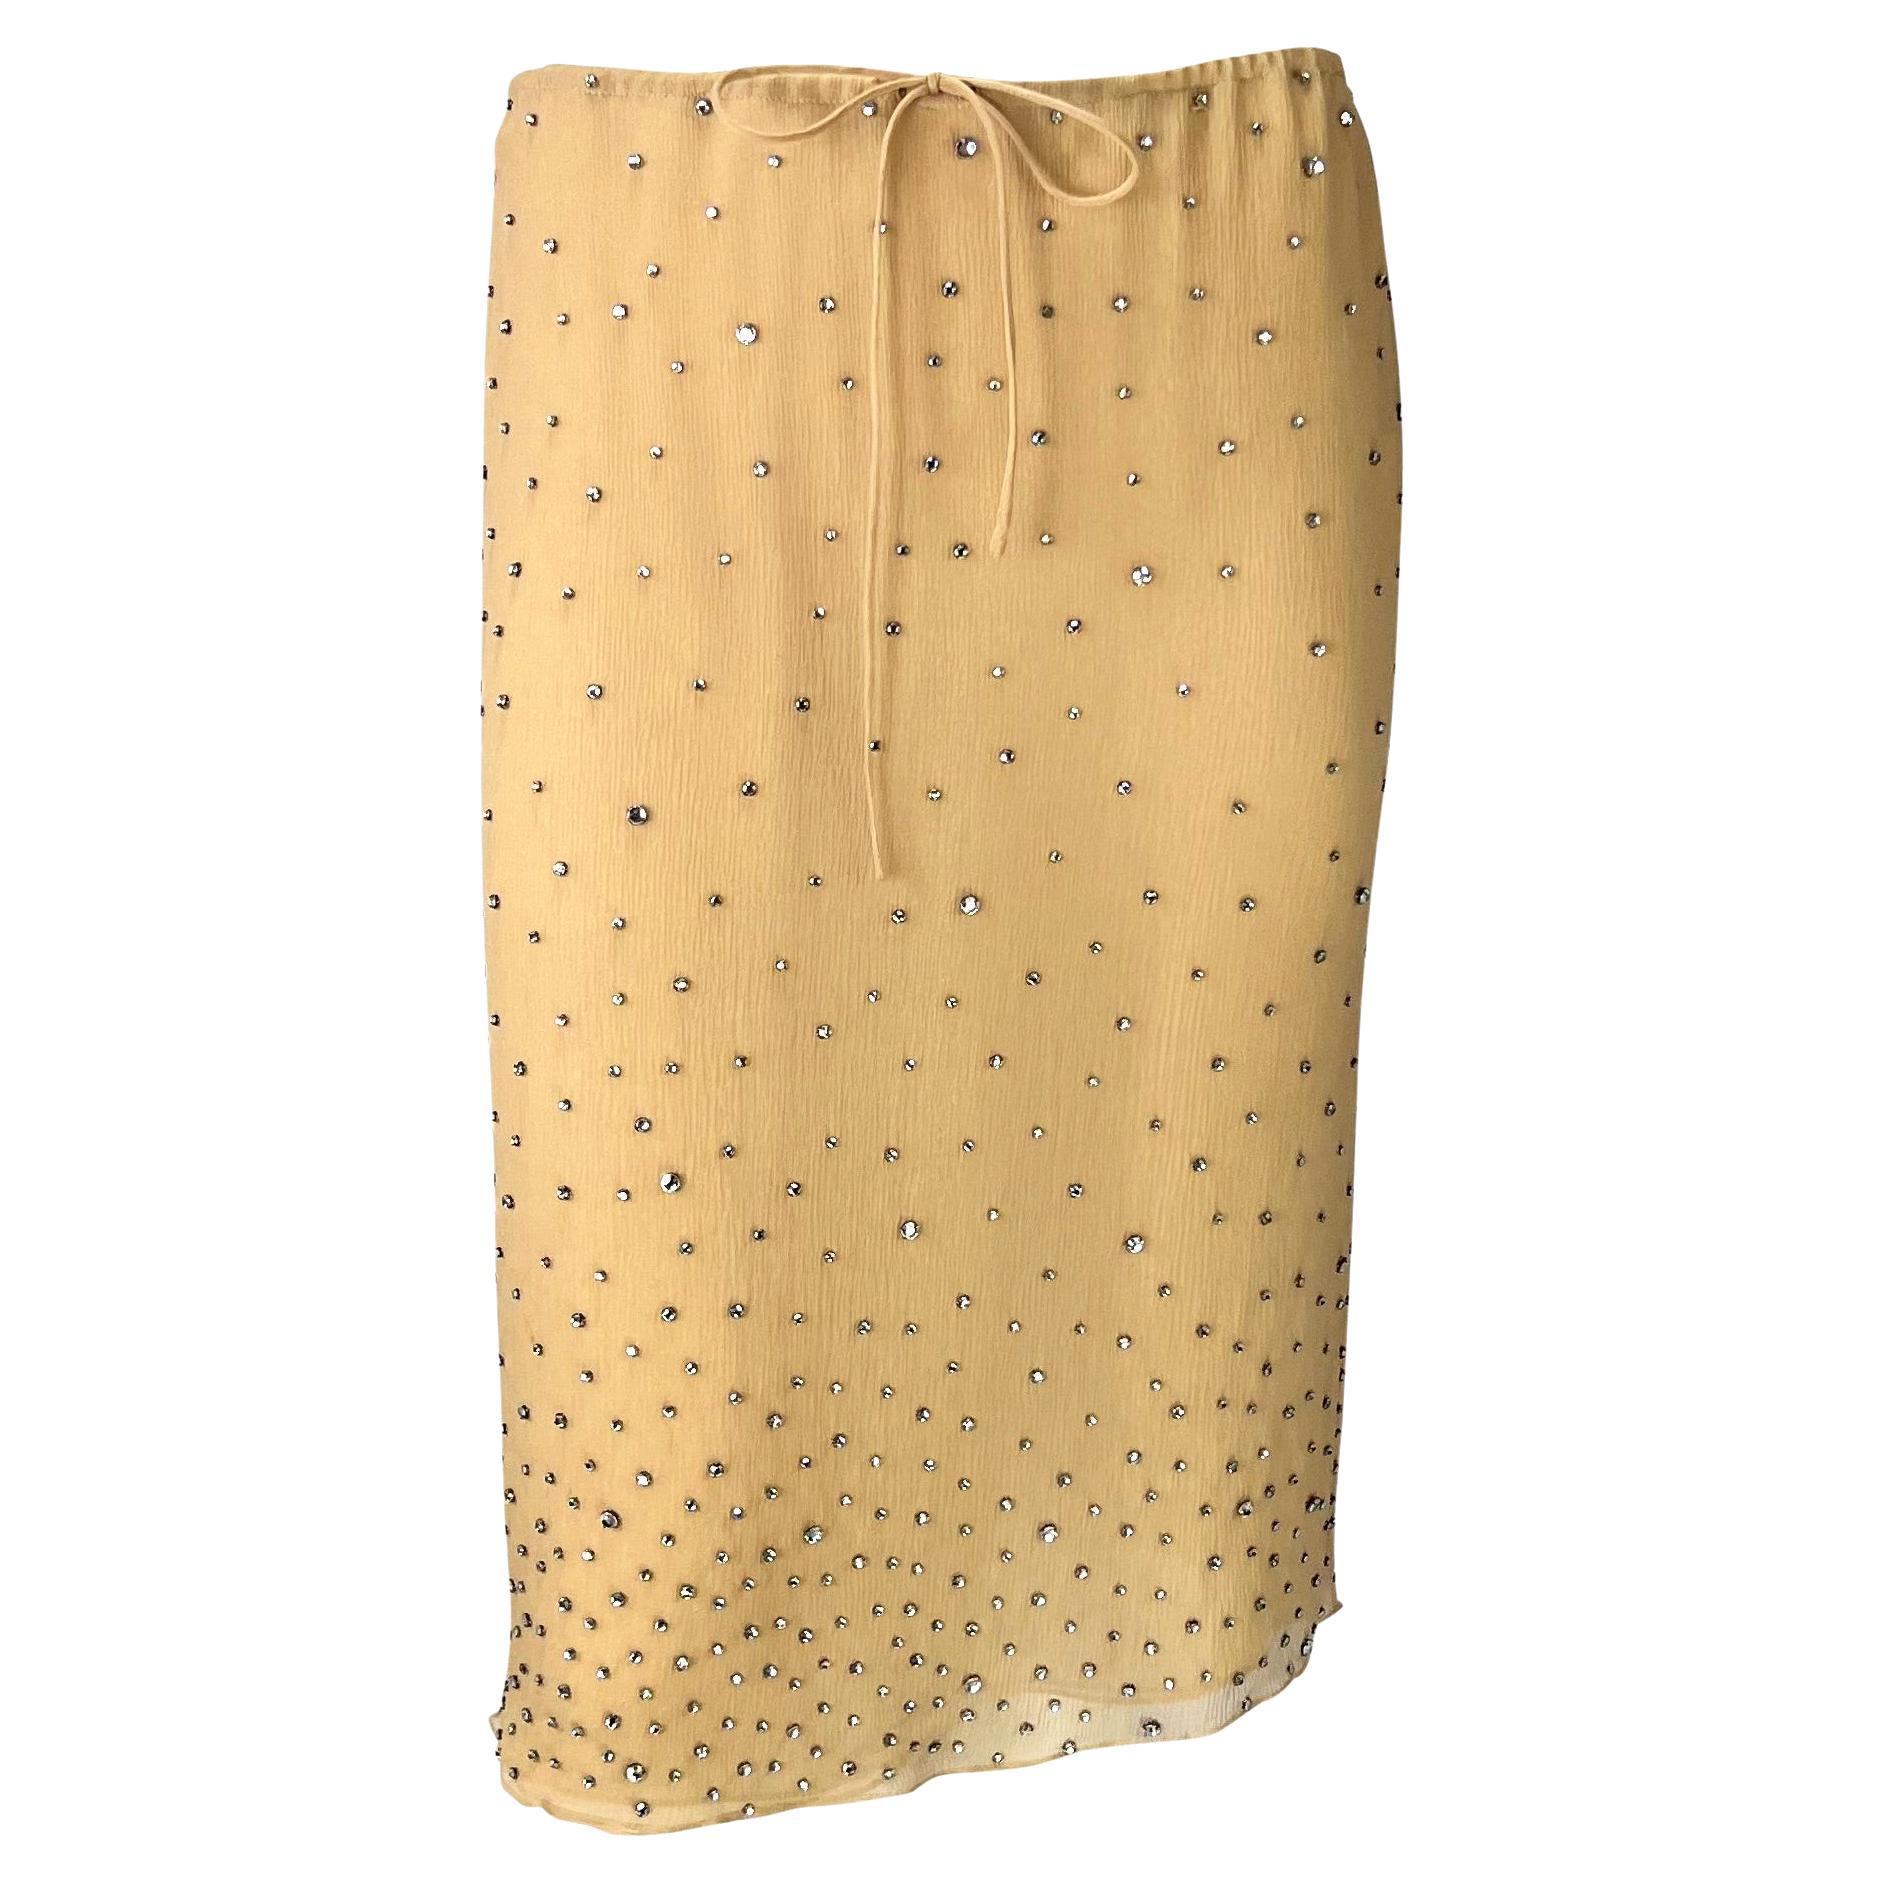 S/S 2000 Gucci by Tom Ford Rhinestone Sheer Beige Crepe Silk Skirt